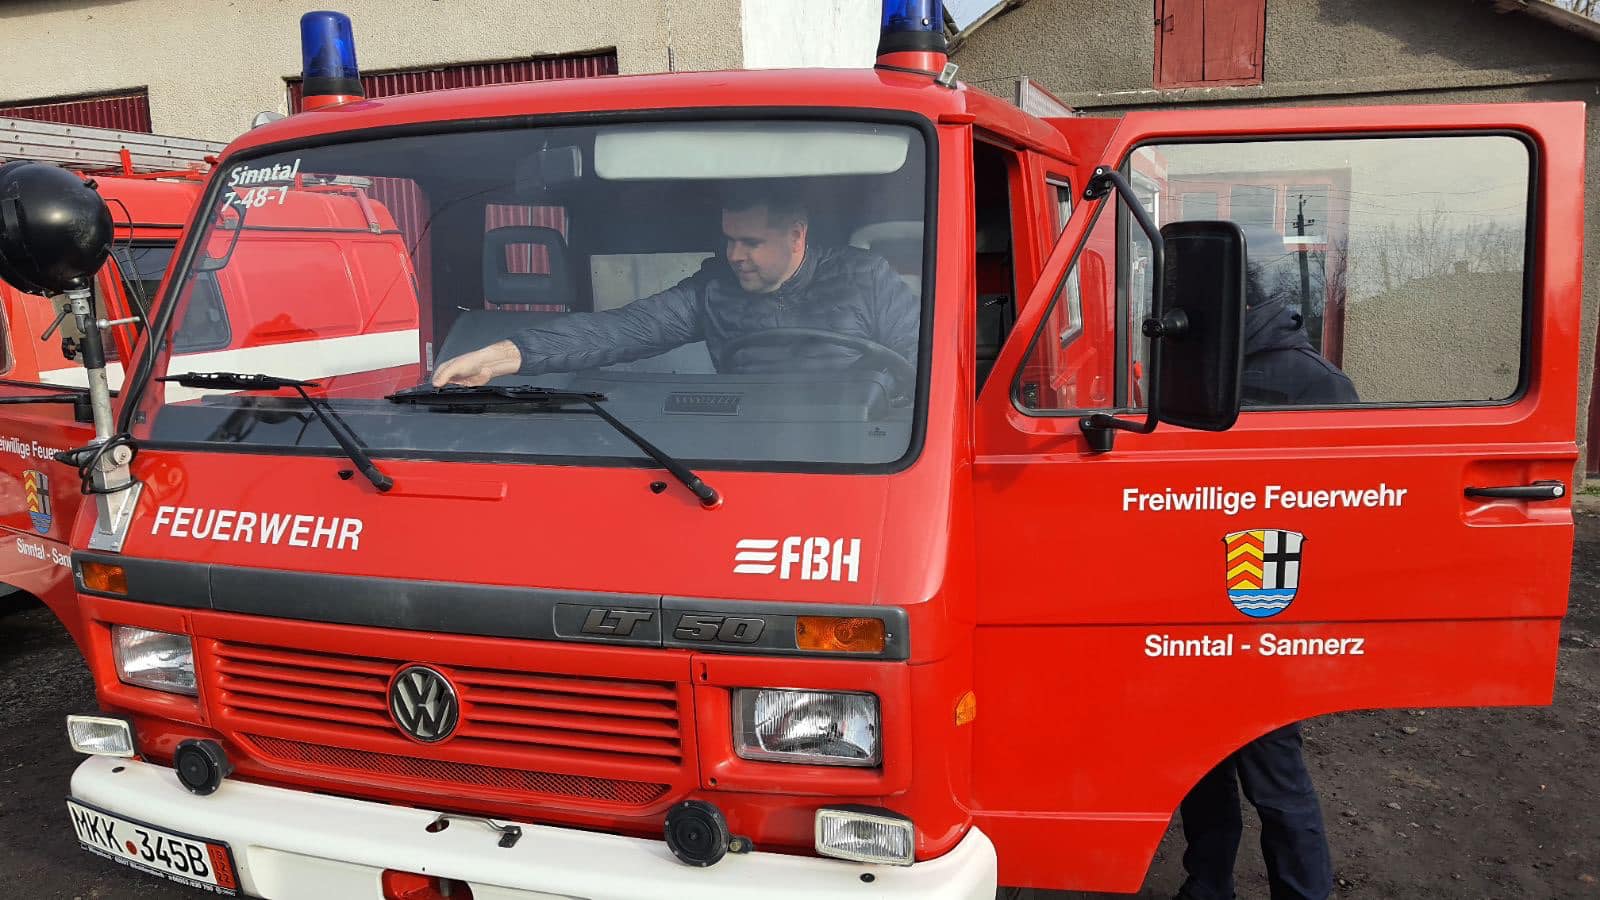 "Маневрений і доволі швидкий": Кілійська пожежно-рятувальна частина отримала укомплектований автомобіль Volkswagen